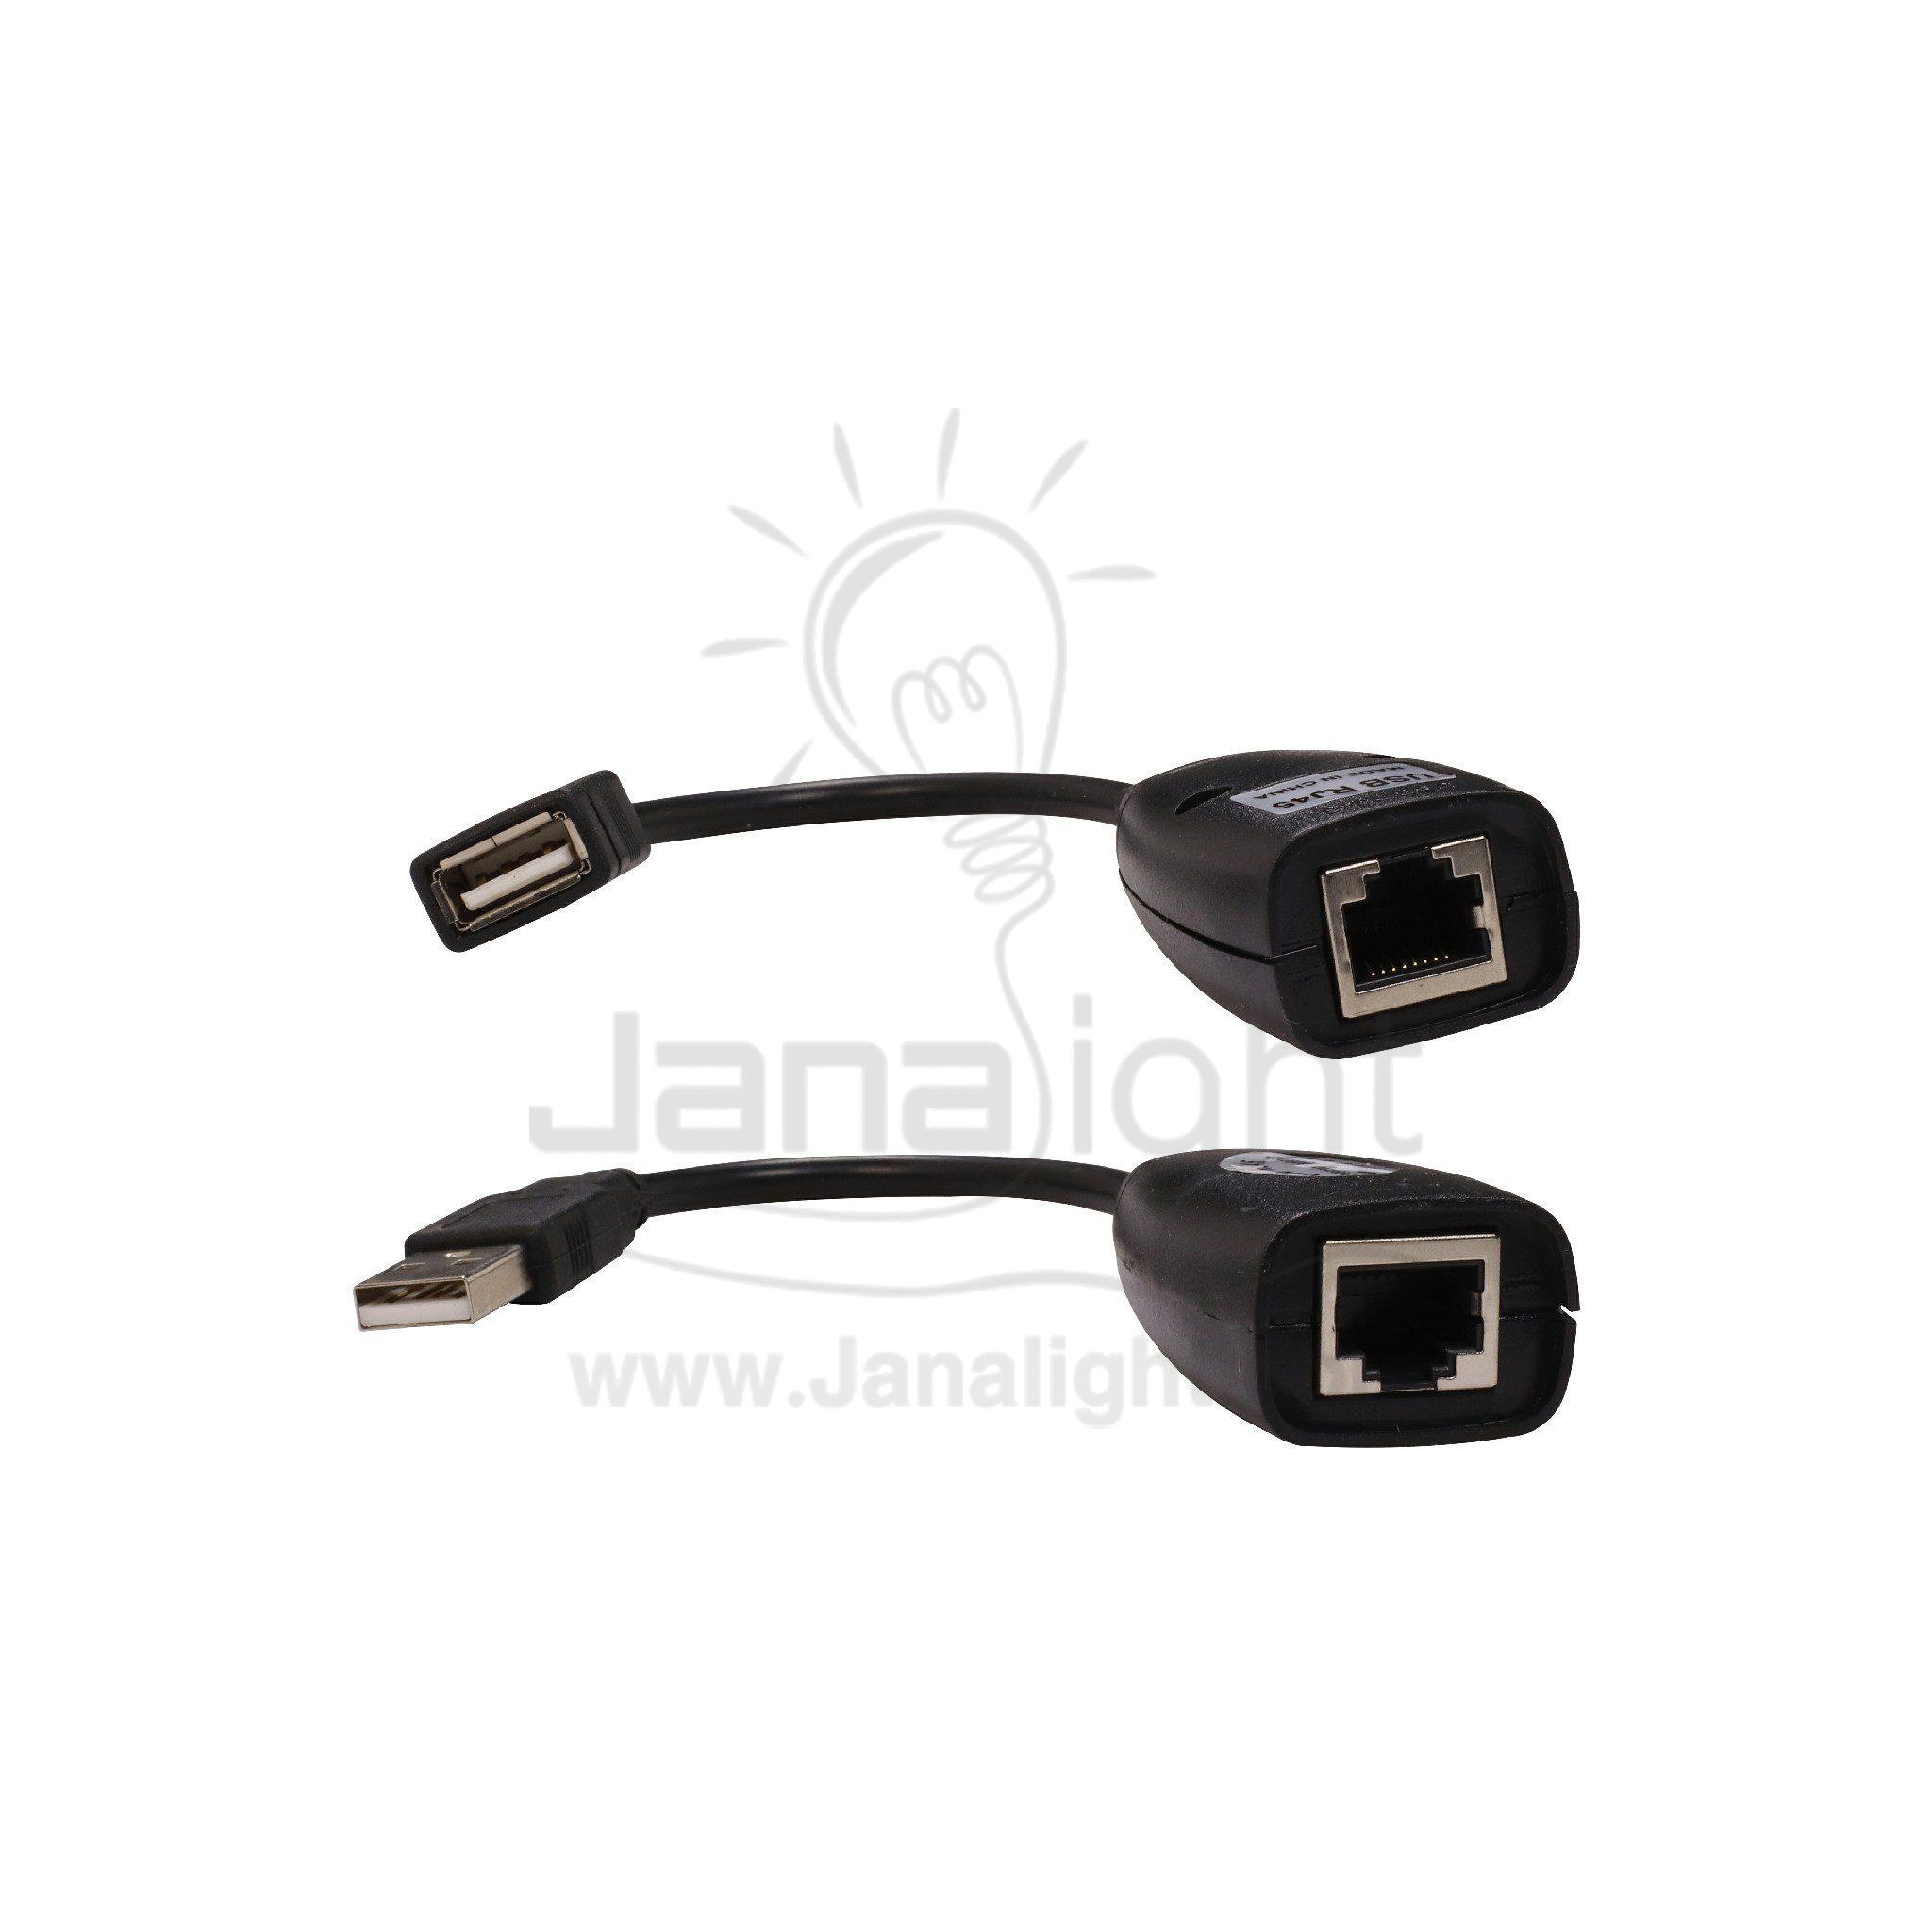 تحويلة من كبل شبكة الى USB ماوس عدد 2 Ethernet Adapter USB Network RJ45 Lan Wired Adapter for Nintendo Switch